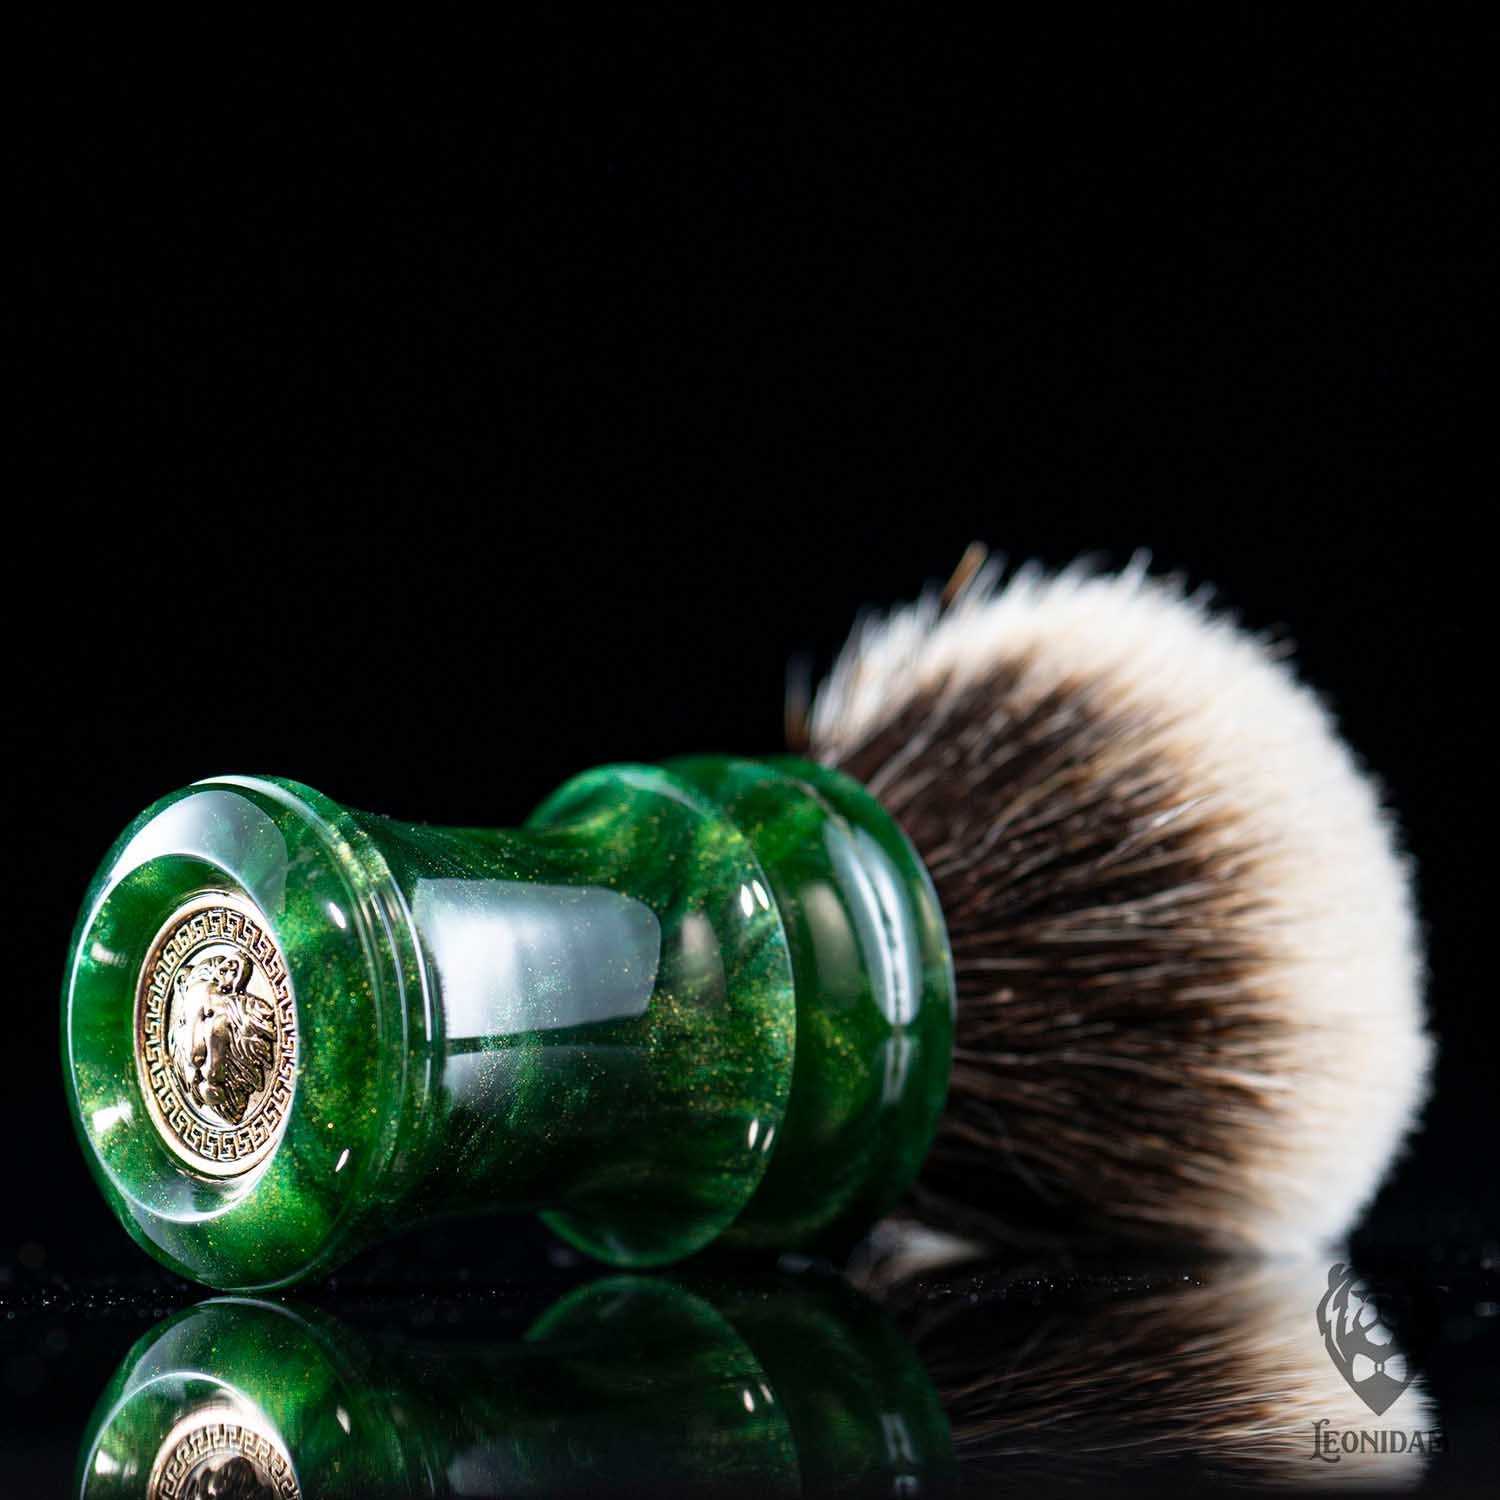 Handmade Shaving Brush "Verdelite" in polished green and gold resin